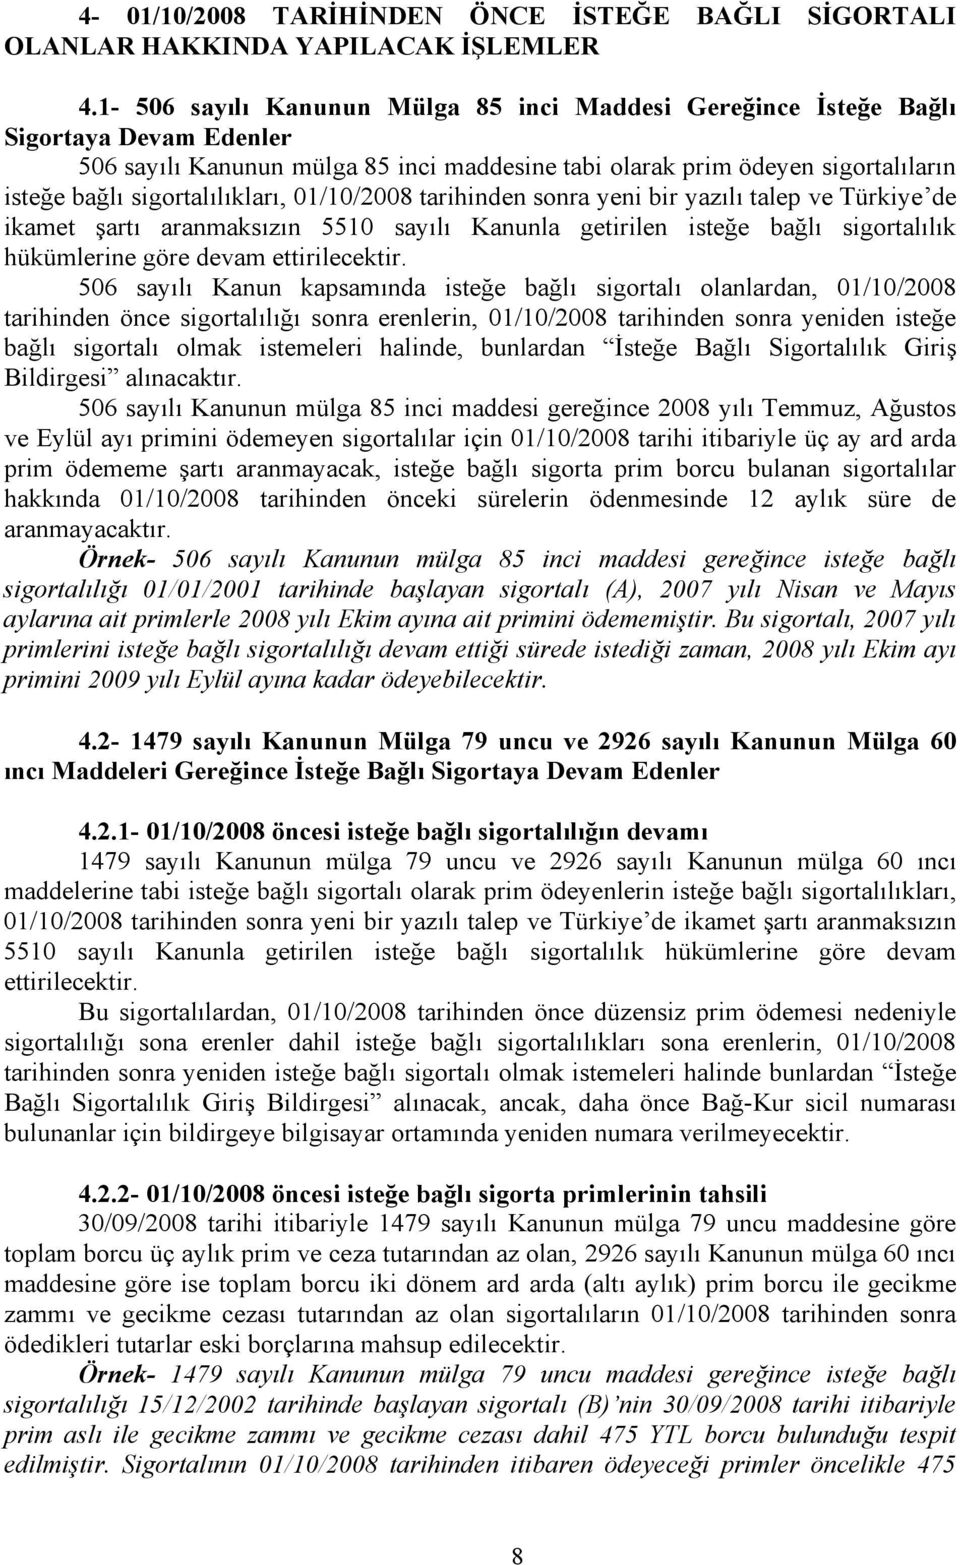 sigortalılıkları, 01/10/2008 tarihinden sonra yeni bir yazılı talep ve Türkiye de ikamet şartı aranmaksızın 5510 sayılı Kanunla getirilen isteğe bağlı sigortalılık hükümlerine göre devam